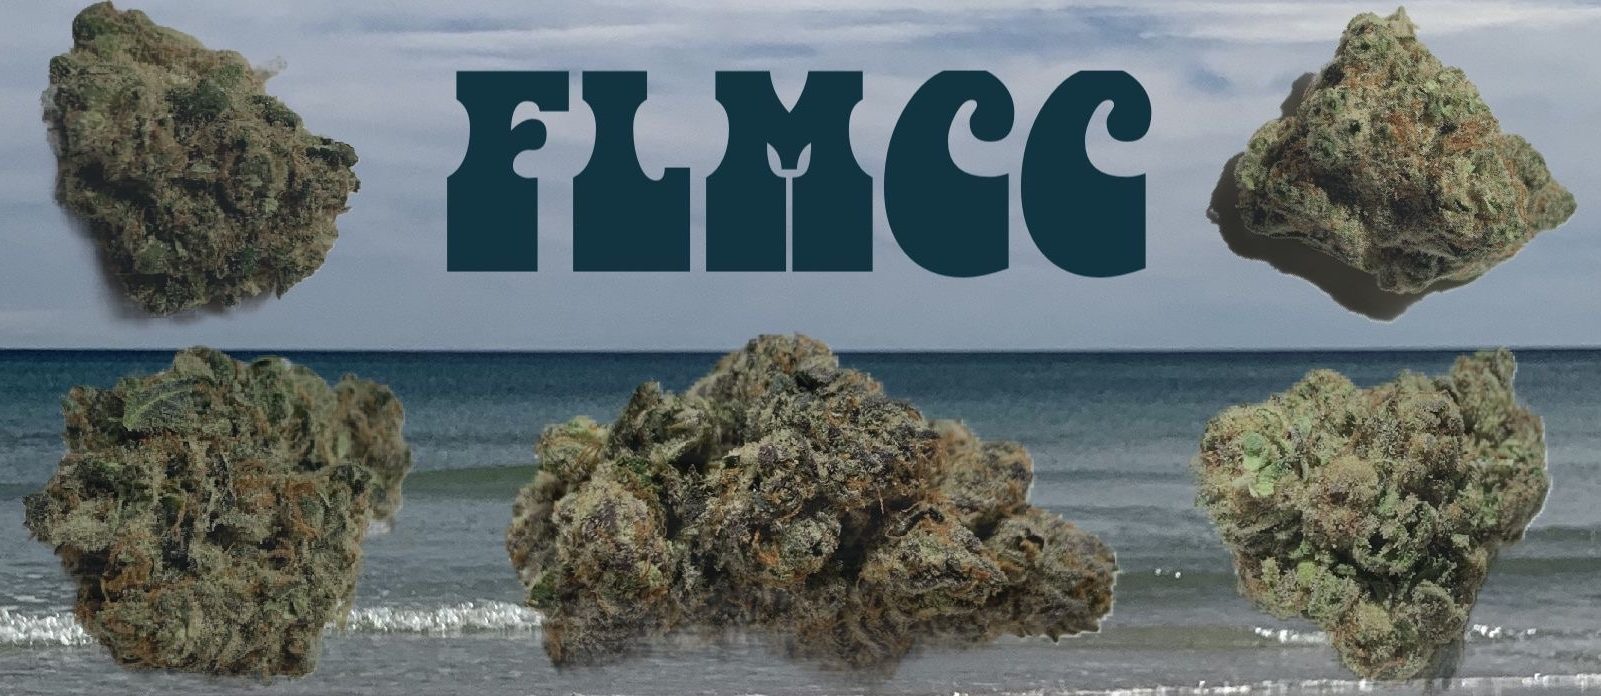 Florida Medical Cannabis Collective